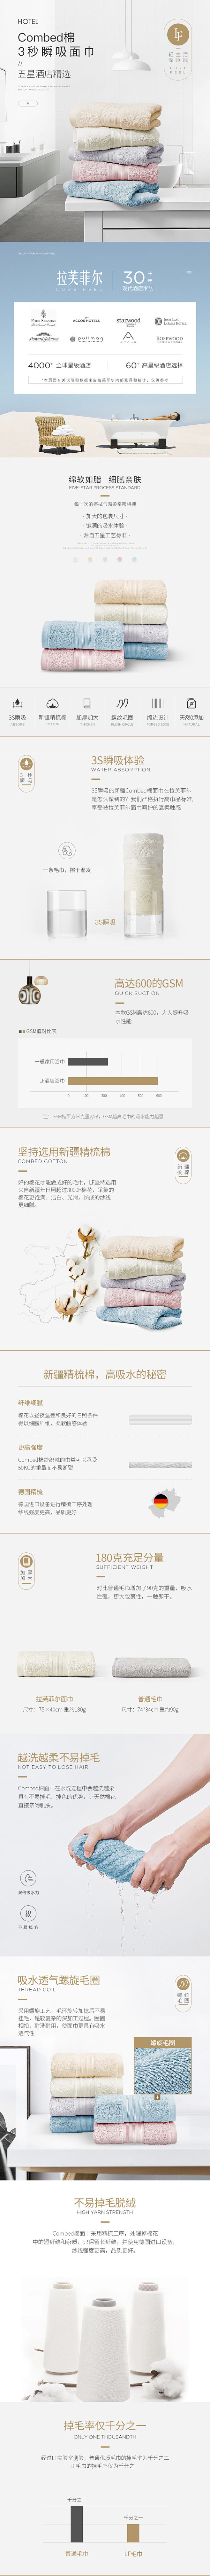 LF拉芙菲尔纯棉毛巾 产品详情页设计